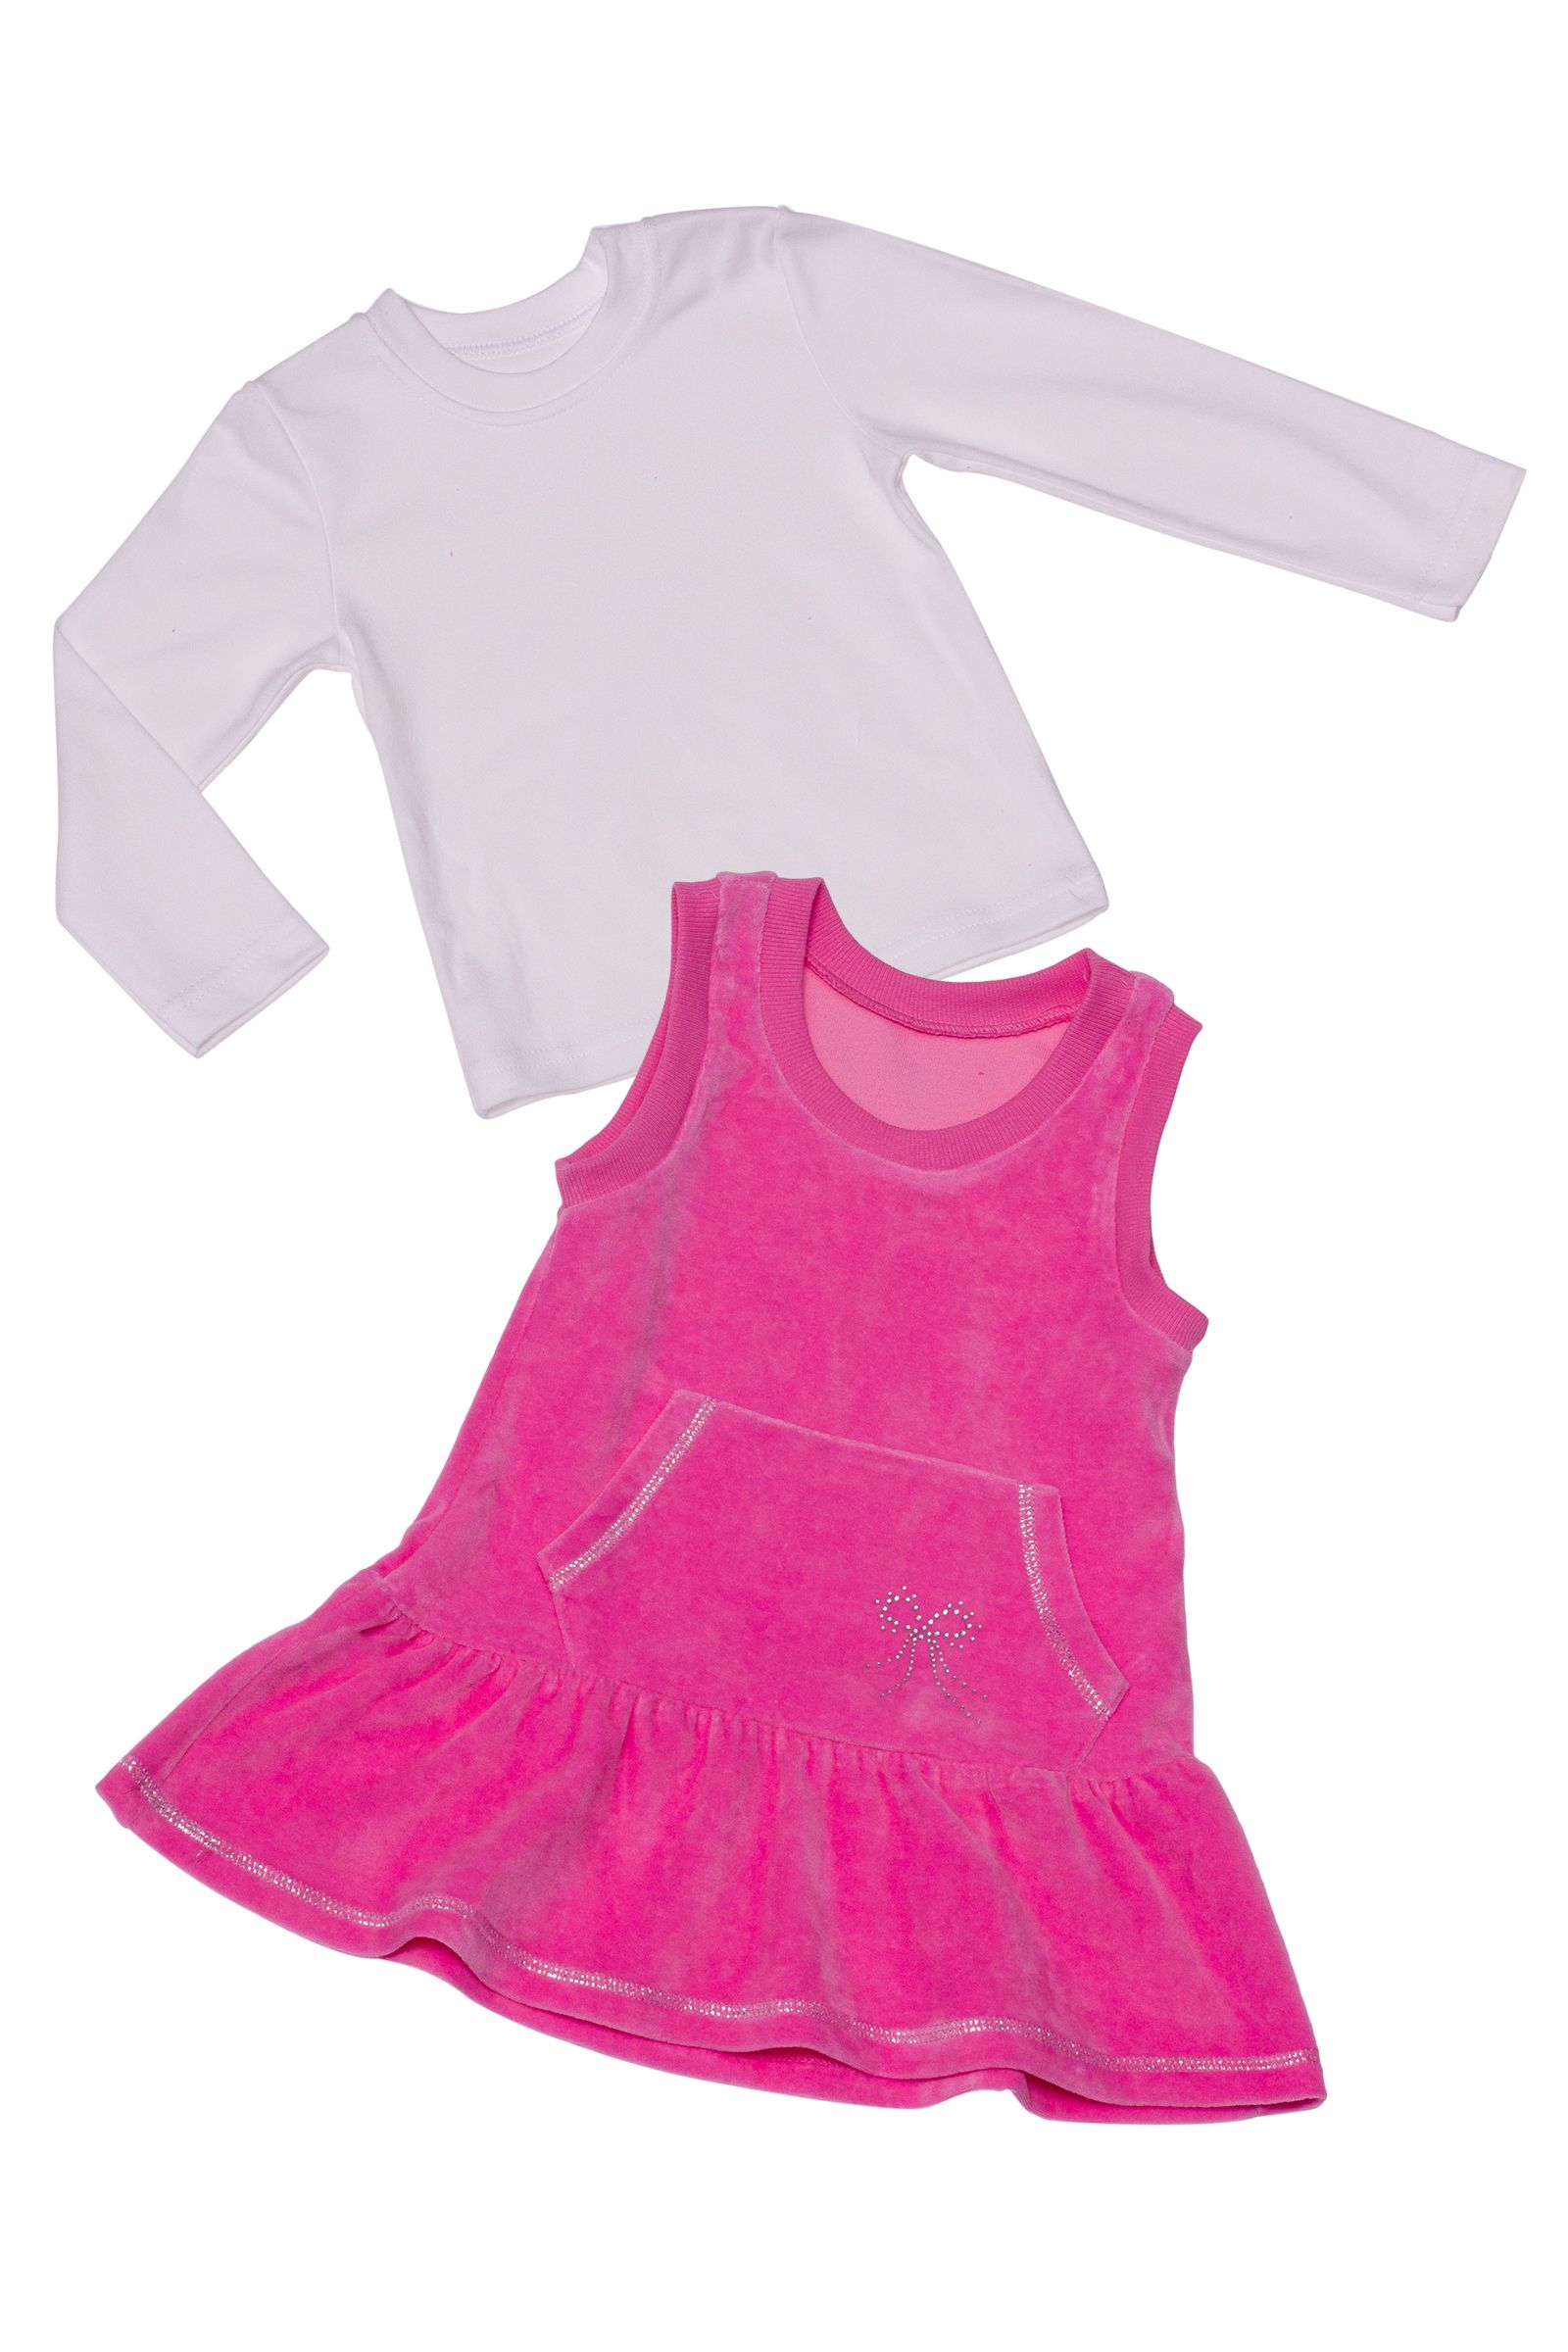 Комплект-КД04-1446 оптом от производителя детской одежды 'Алёна'